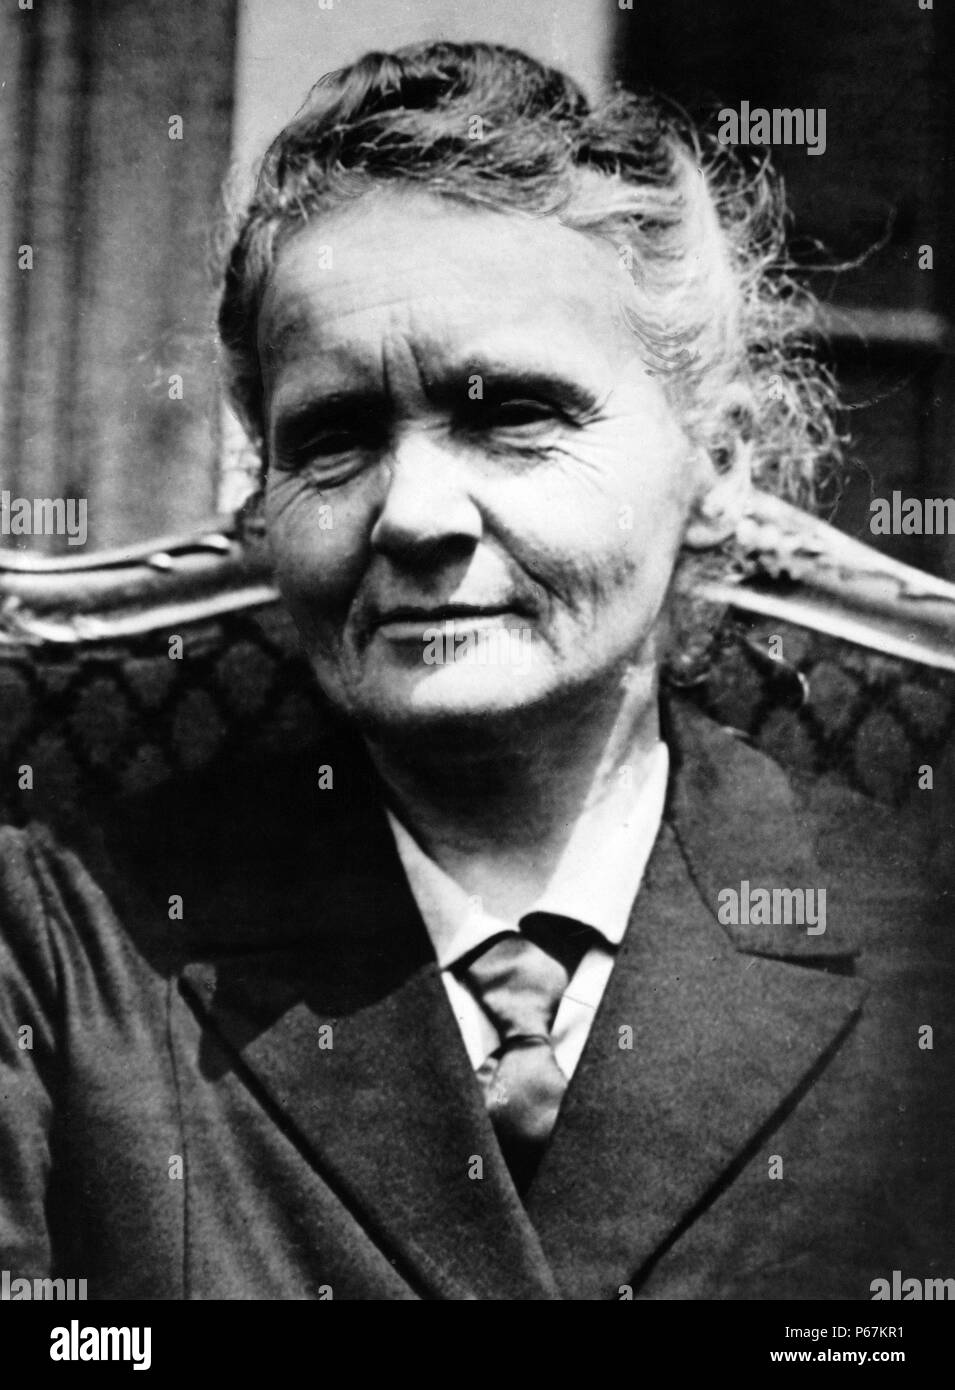 Fotografia di Marie Sklodowska-Curie (1867-1934) un polacco e naturalizzato-fisico francese, vincitore del Premio Nobel e farmacia che ha condotto ricerche pionieristiche sulla radioattività. Datata 1930 Foto Stock